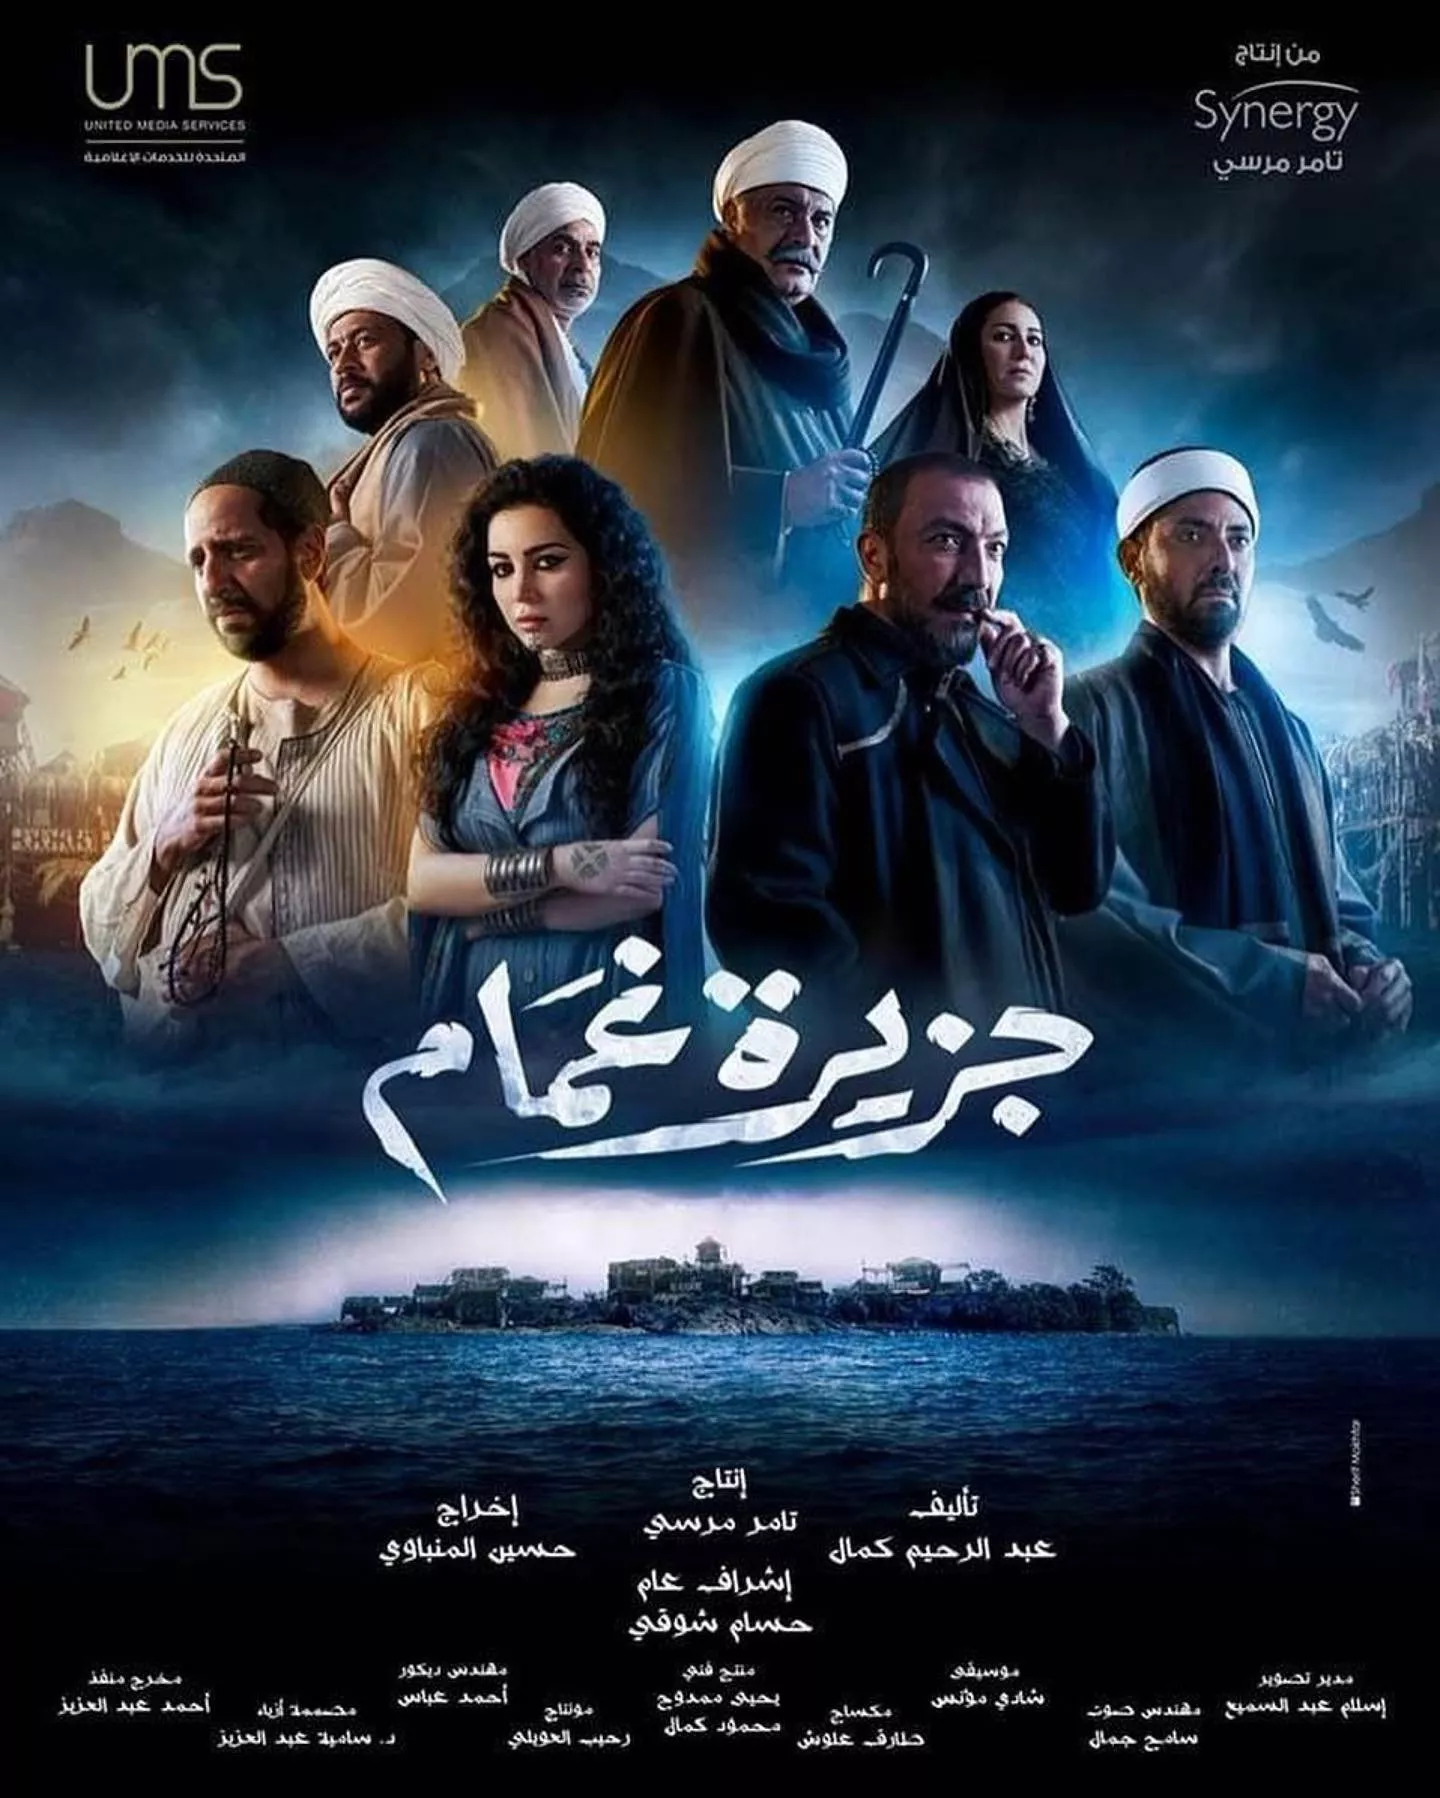 لائحة بأبرز مسلسلات مصرية ستعرض في رمضان 2022...مشاهدة ممتعة!